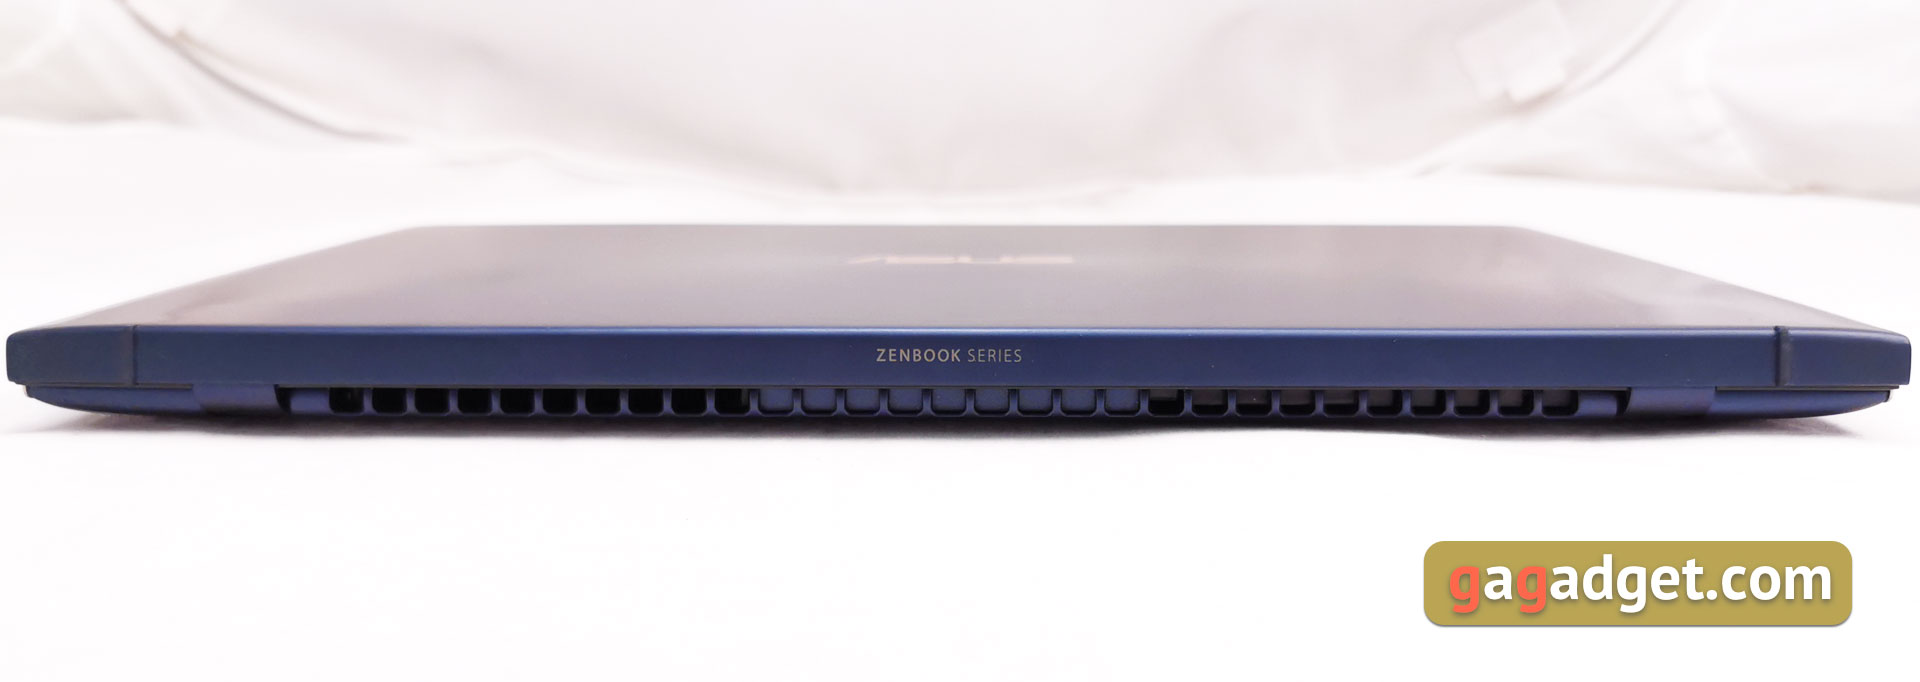 Обзор ASUS ZenBook 13 UX333FN: мобильность и производительность-13